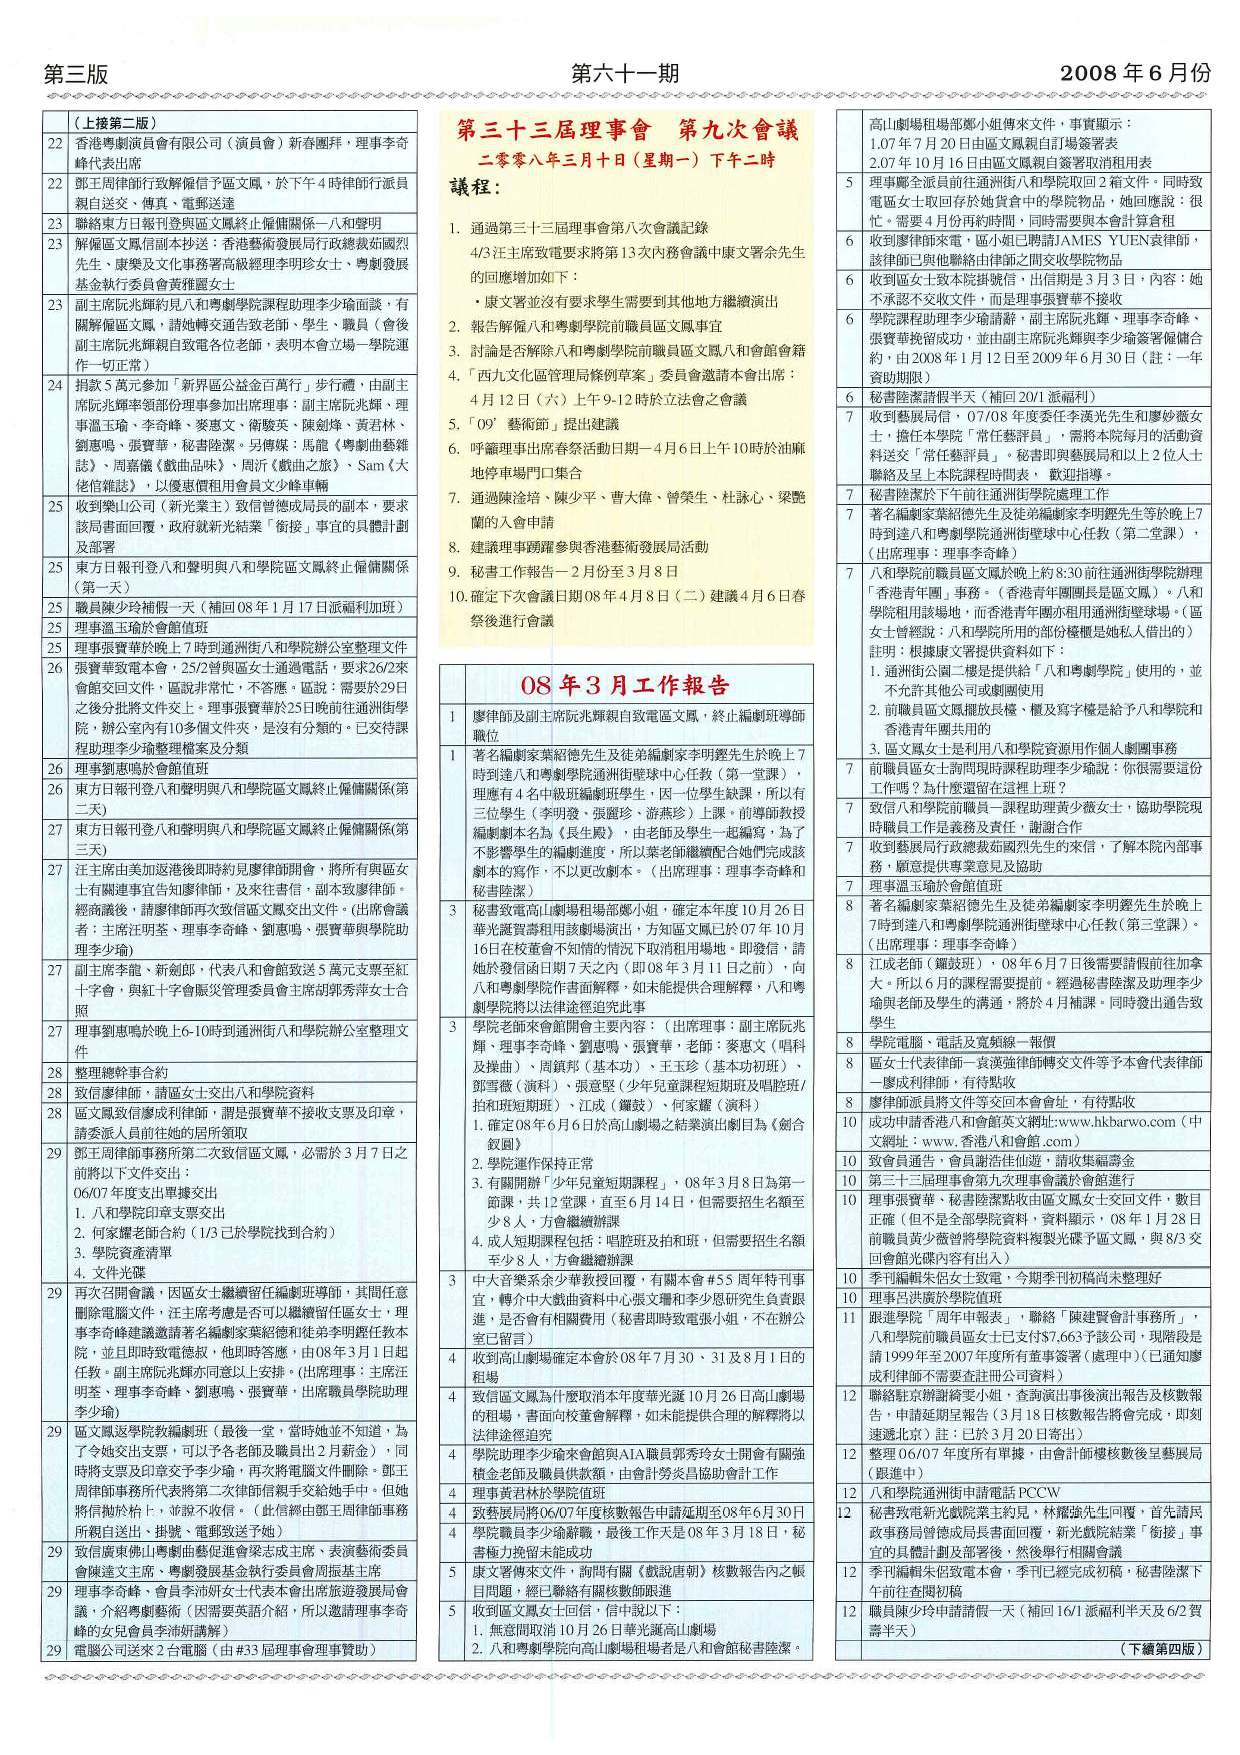 香港八和會館第三十三屆理事會第九次會議議程及辦公室報告（2008年3月）